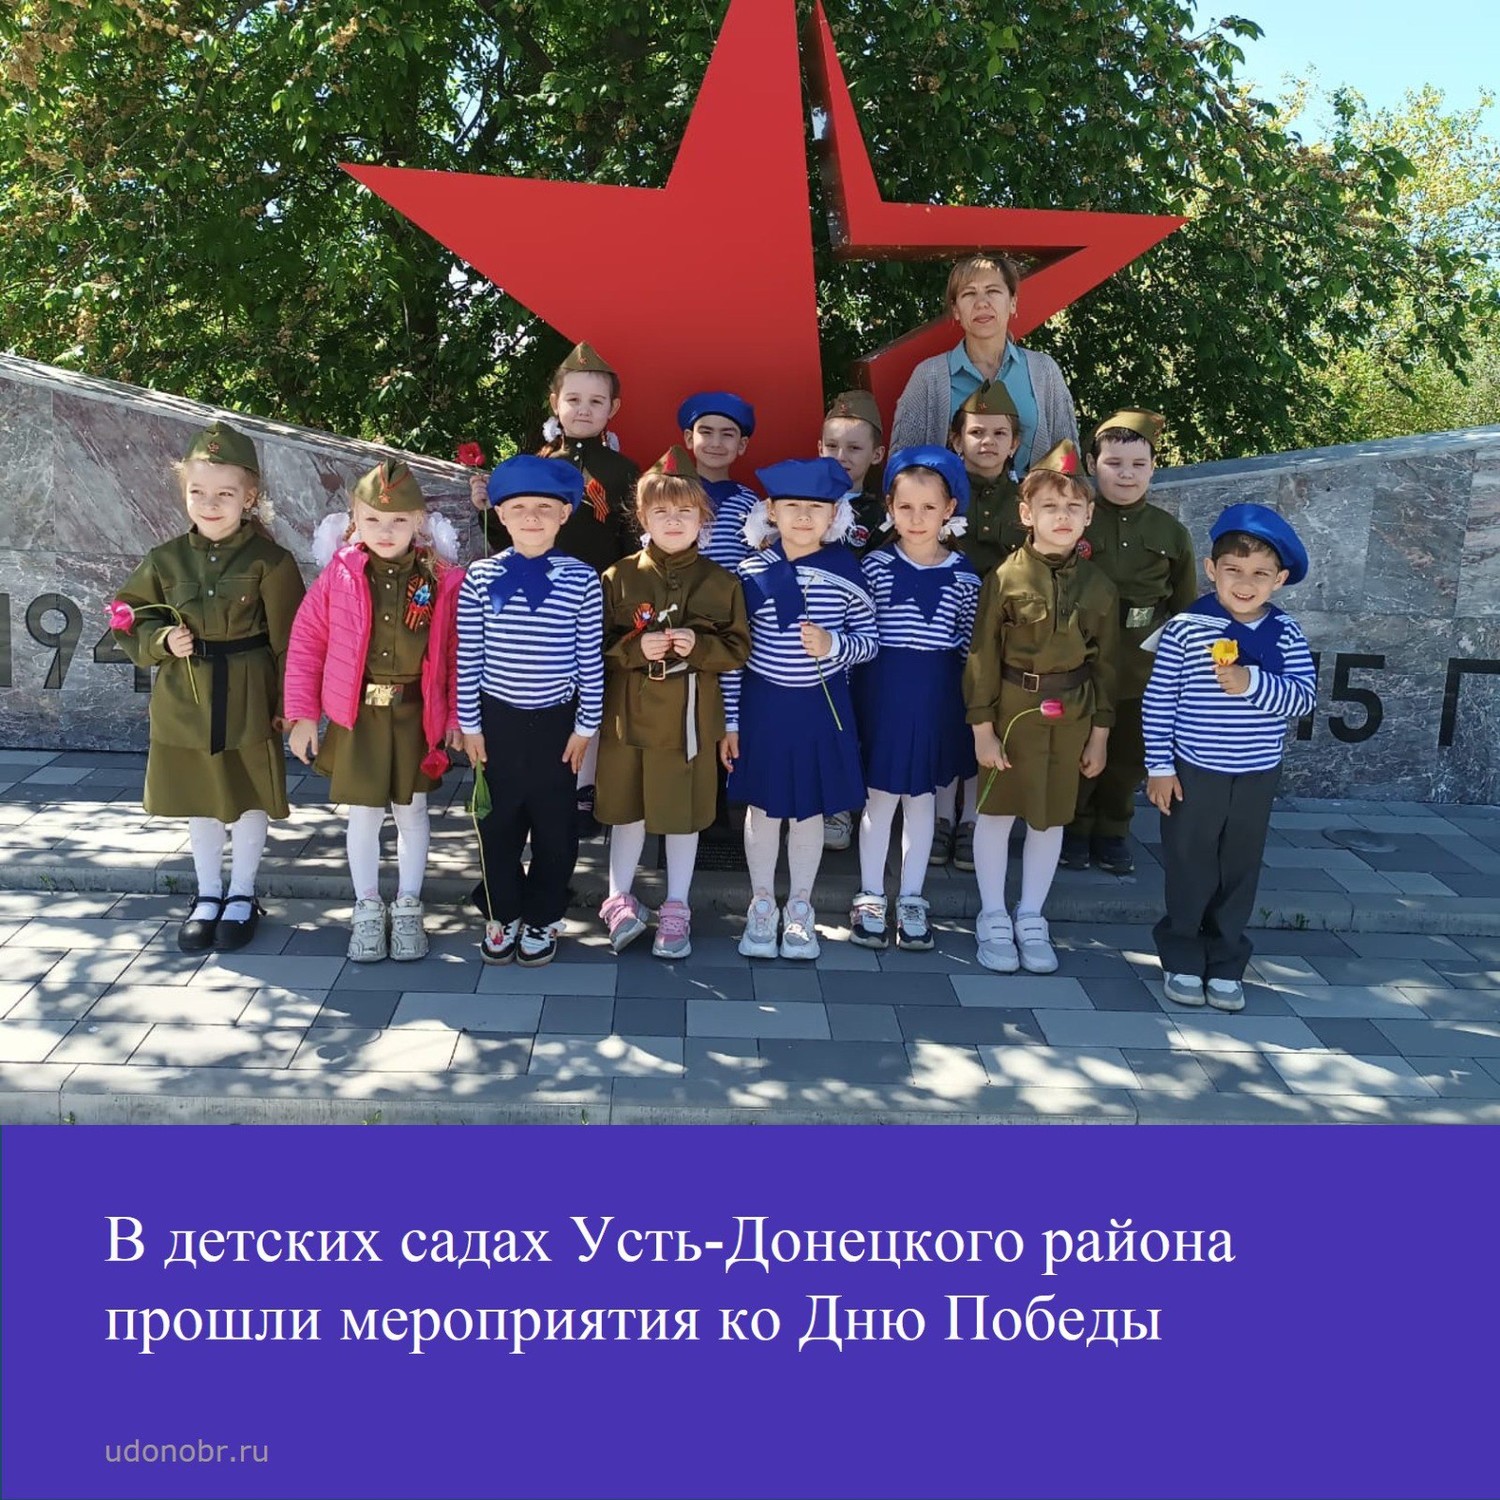 В детских садах Усть-Донецкого района прошли мероприятия ко Дню Победы